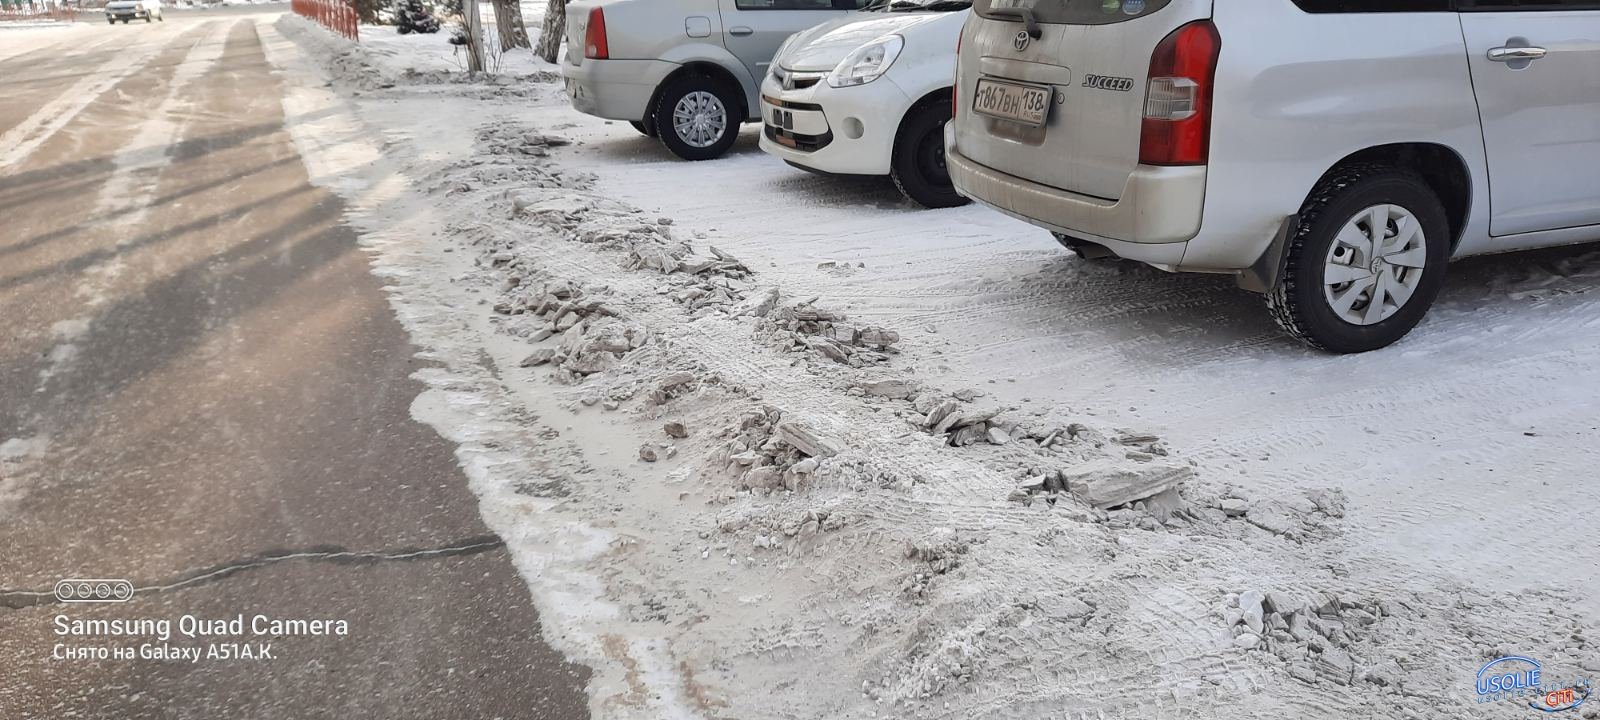 Издевательство:  Дорожники в Усолье забаррикадировали снегом парковки